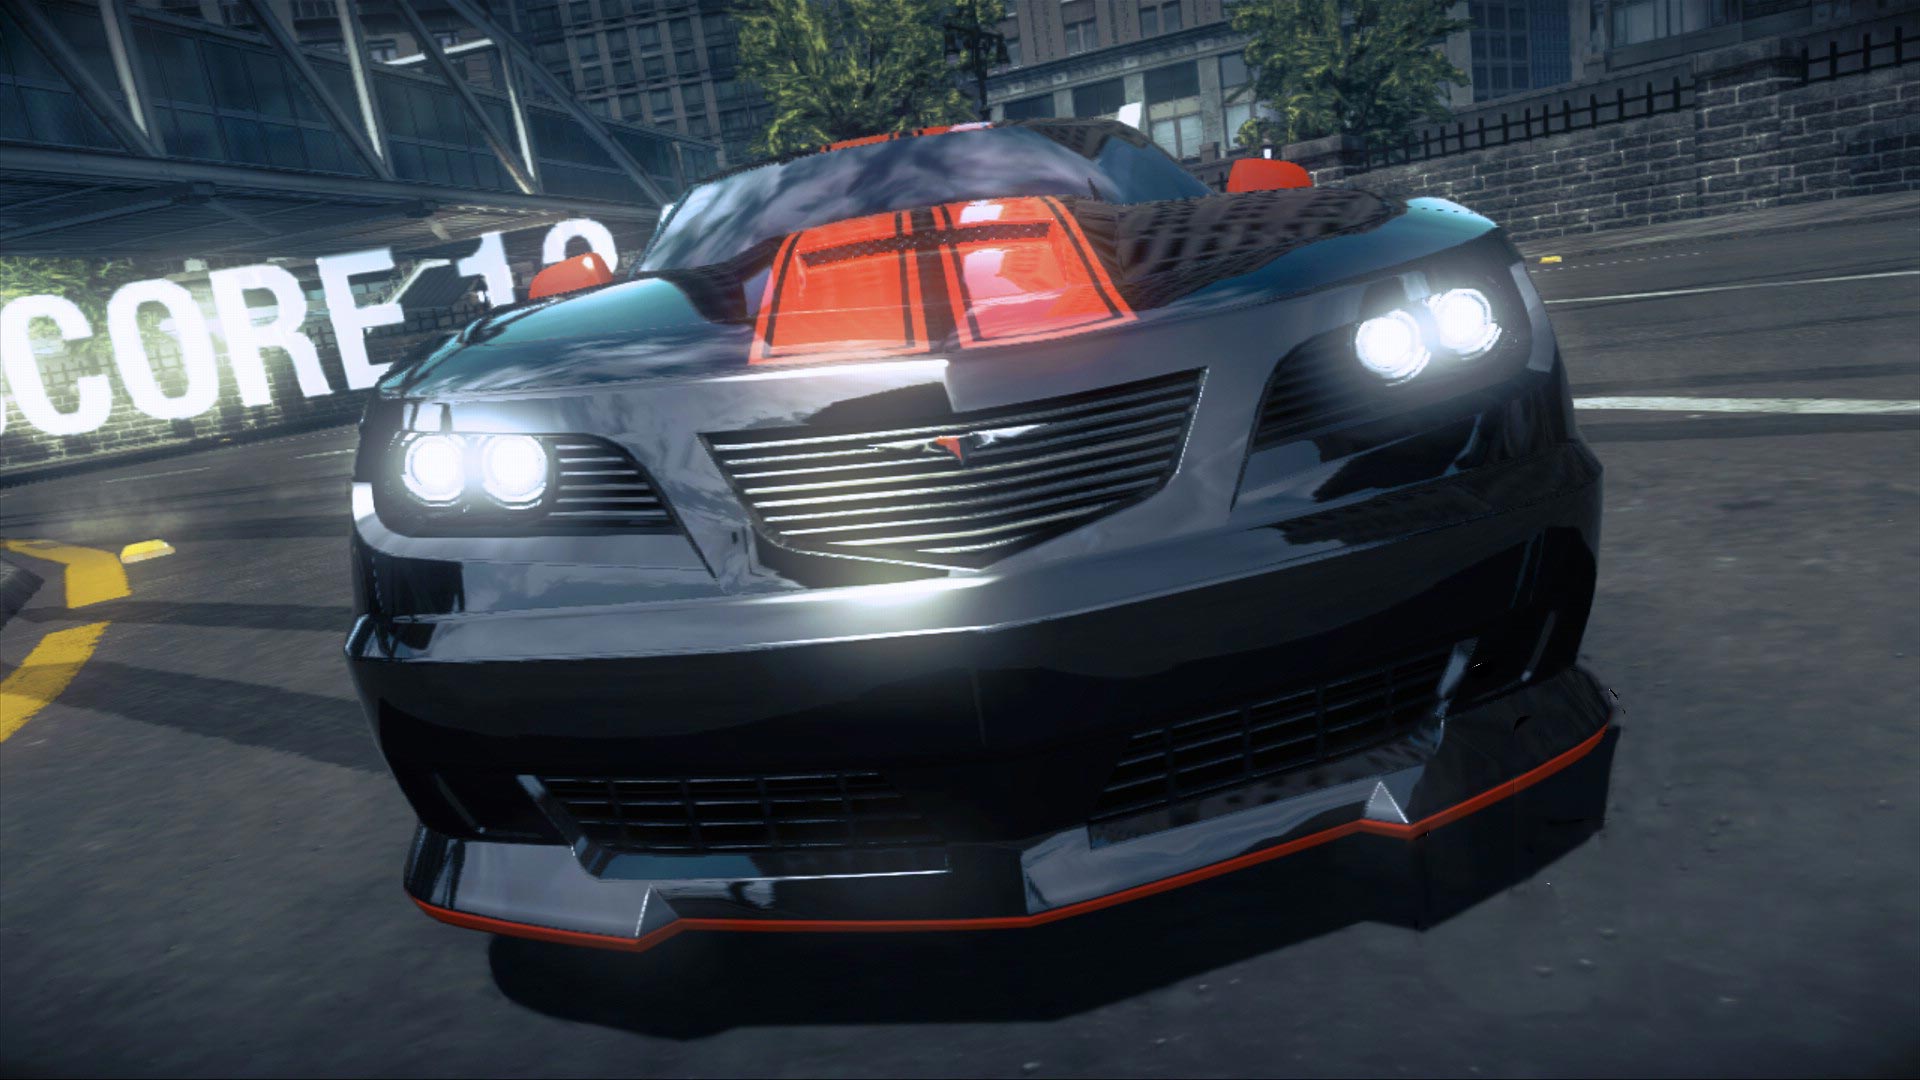 Ridge Racer'ın Gamescom görüntüleri (Galeri)